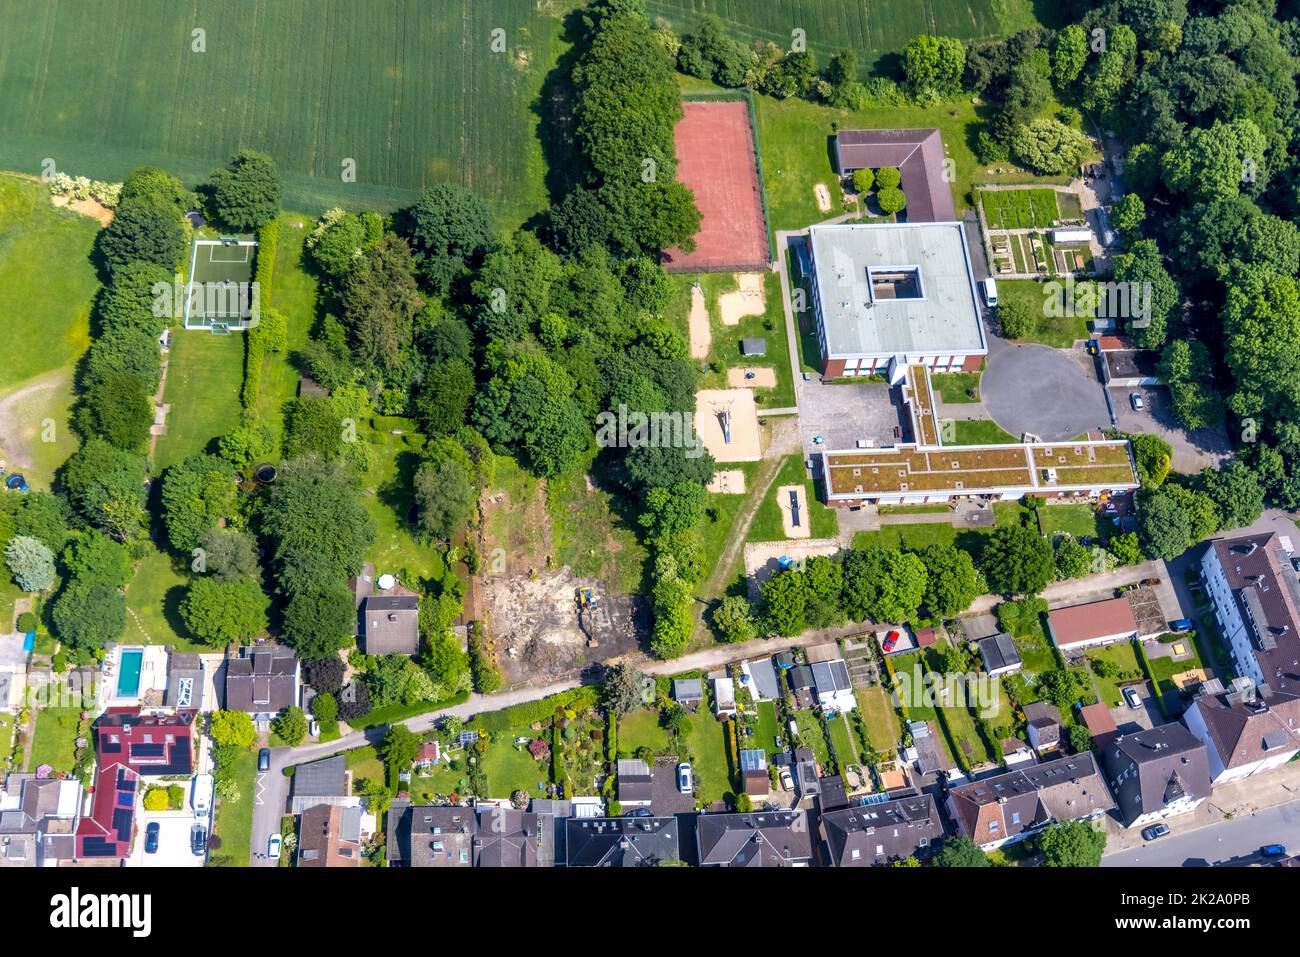 Luftbild, Robert-Brauner-Schule, Baustelle Herne-Süd, Herne, Ruhrgebiet, Nordrhein-Westfalen, Deutschland Stock Photo